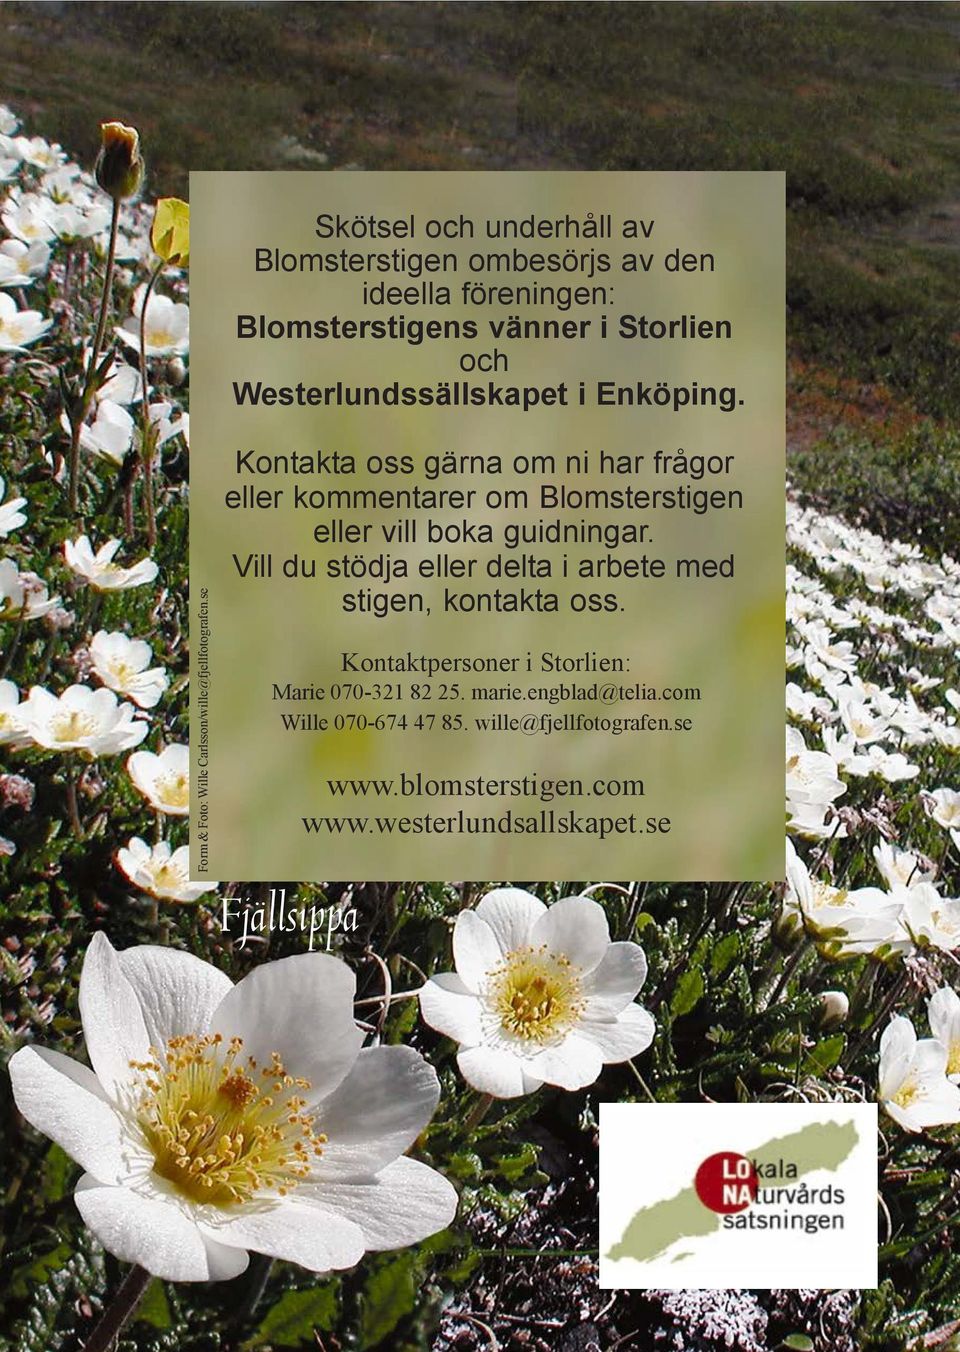 Westerlundssällskapet i Enköping. Kontakta oss gärna om ni har frågor eller kommentarer om Blomsterstigen eller vill boka guidningar.